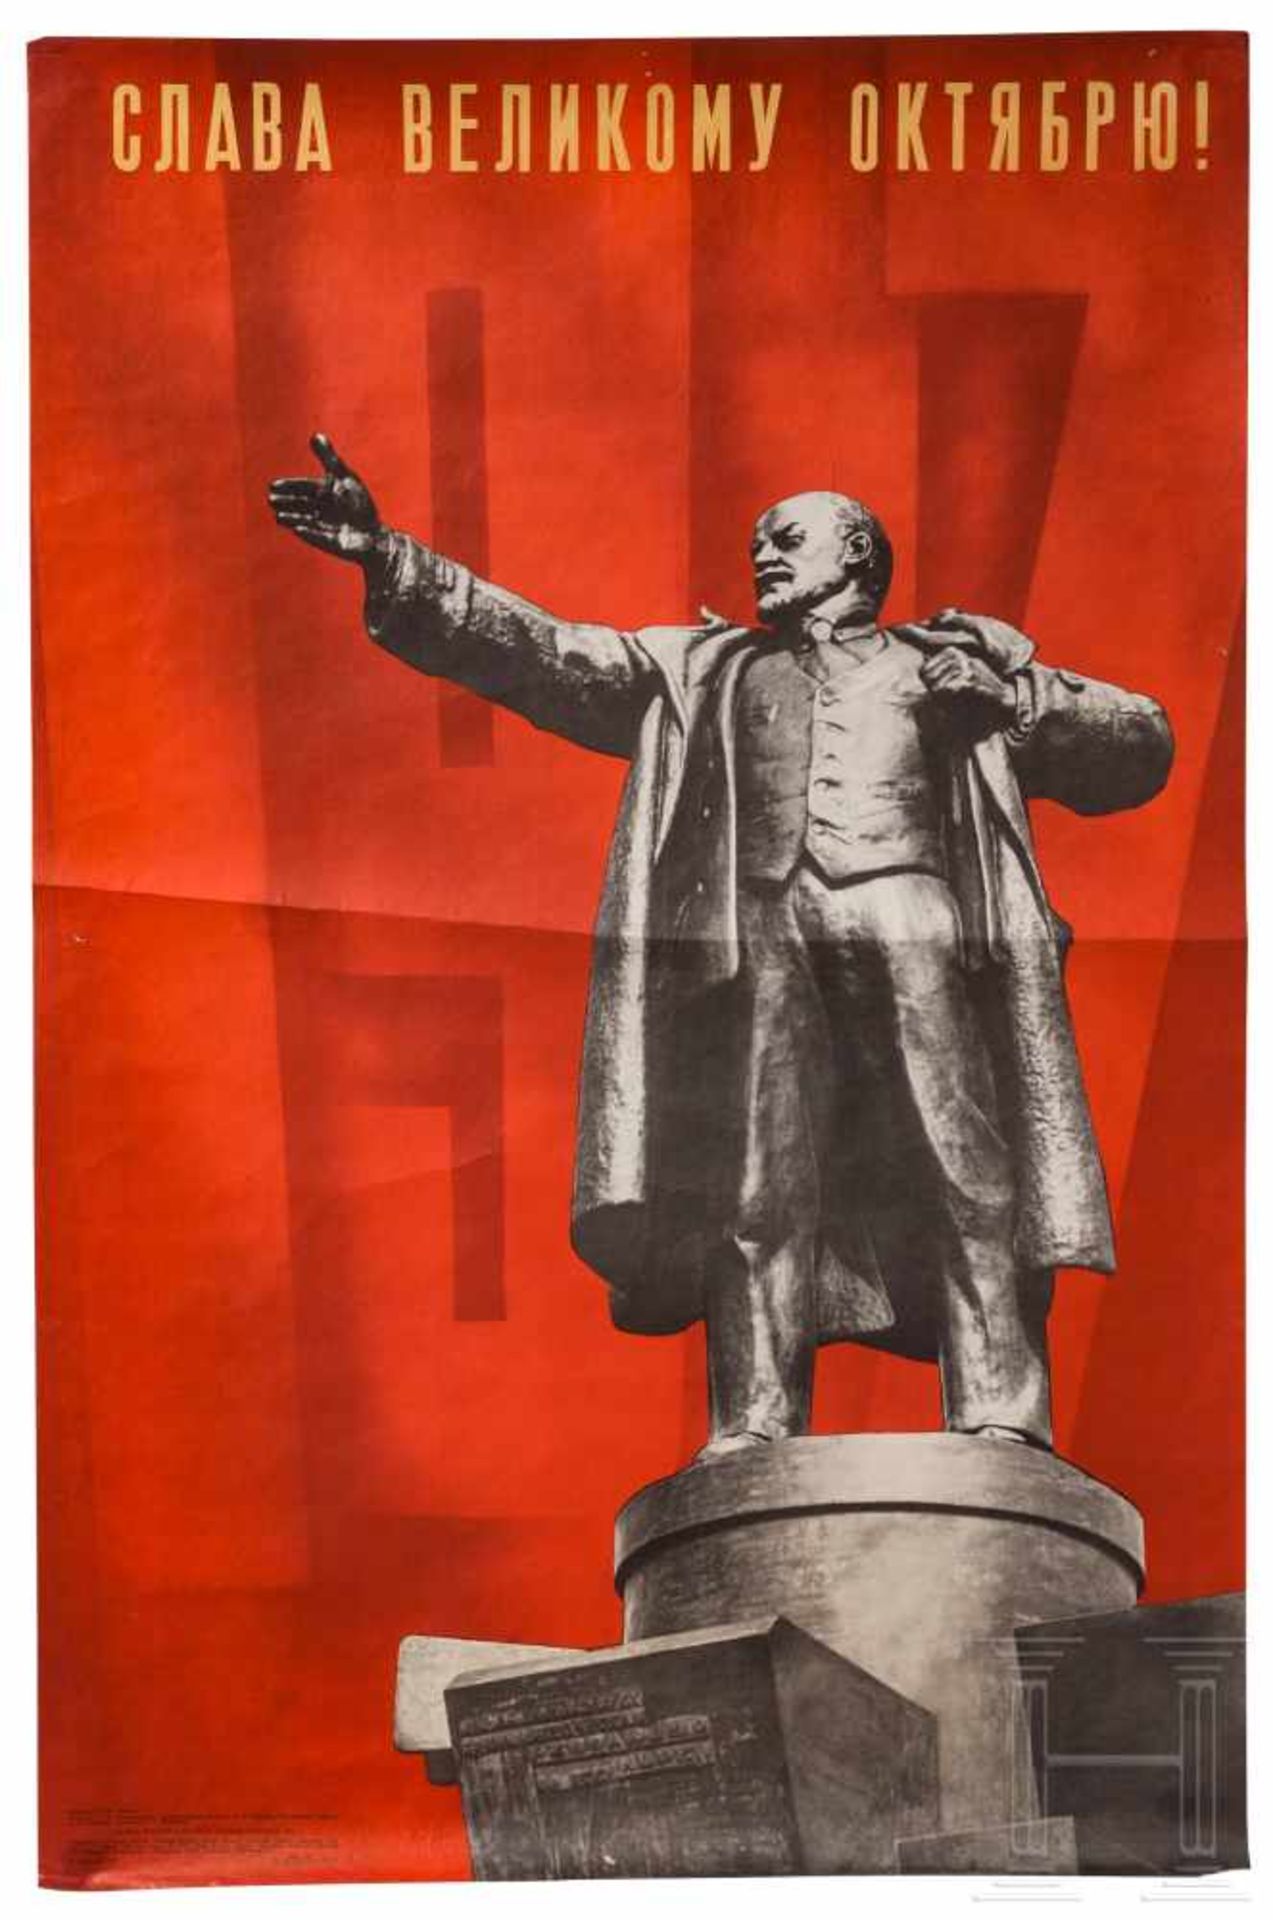 Three Lenin posters, 1970s/80sMehrfarbiger Druck auf Papier. Lenin-Portrait, Spasski-Turm, Fahnen, - Bild 3 aus 3